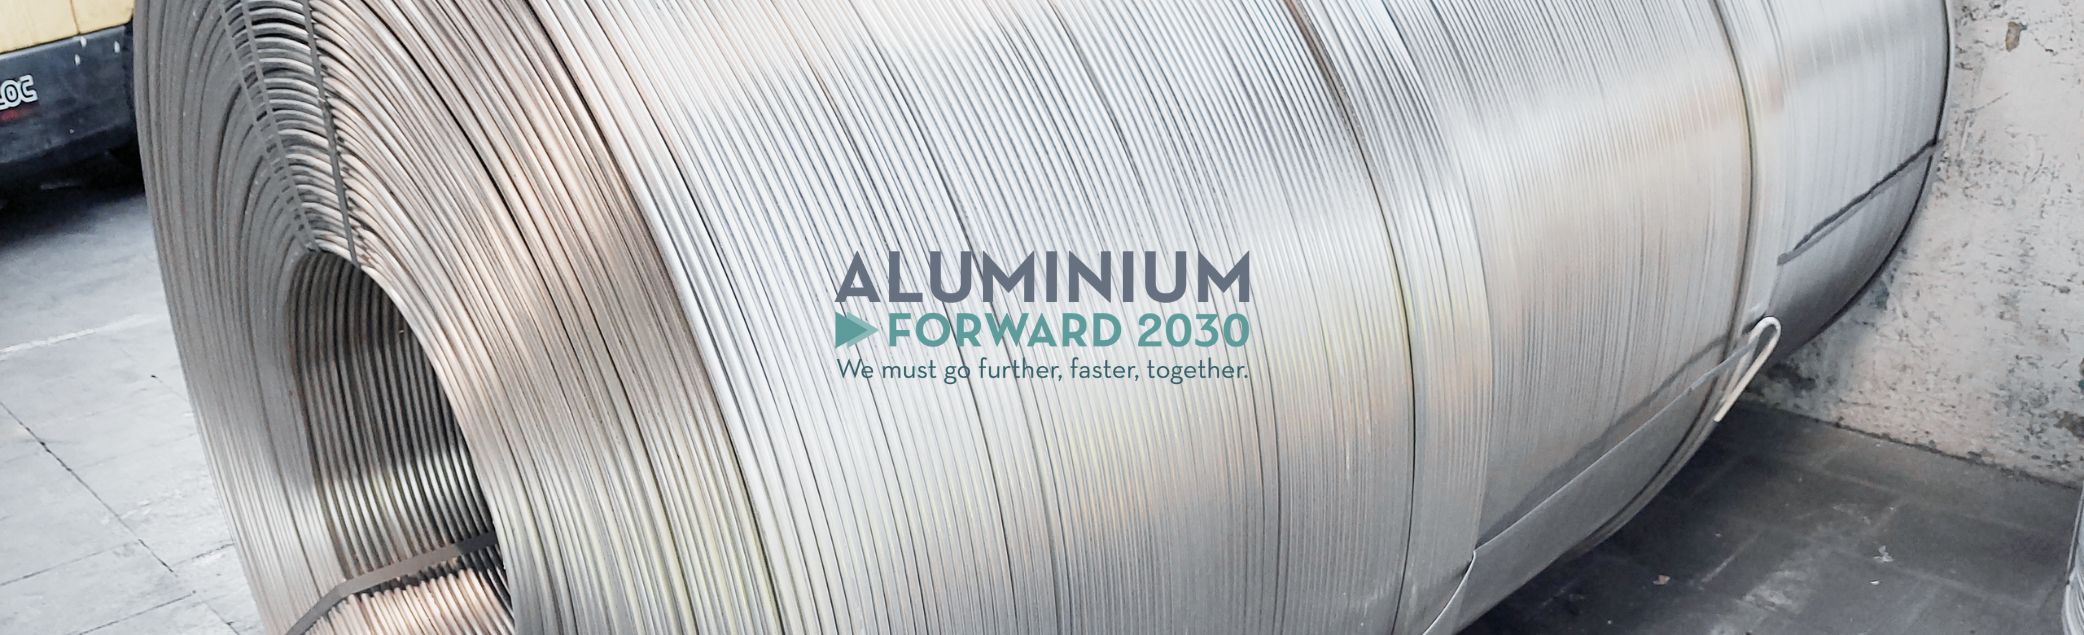 Aluminium Forward 2030